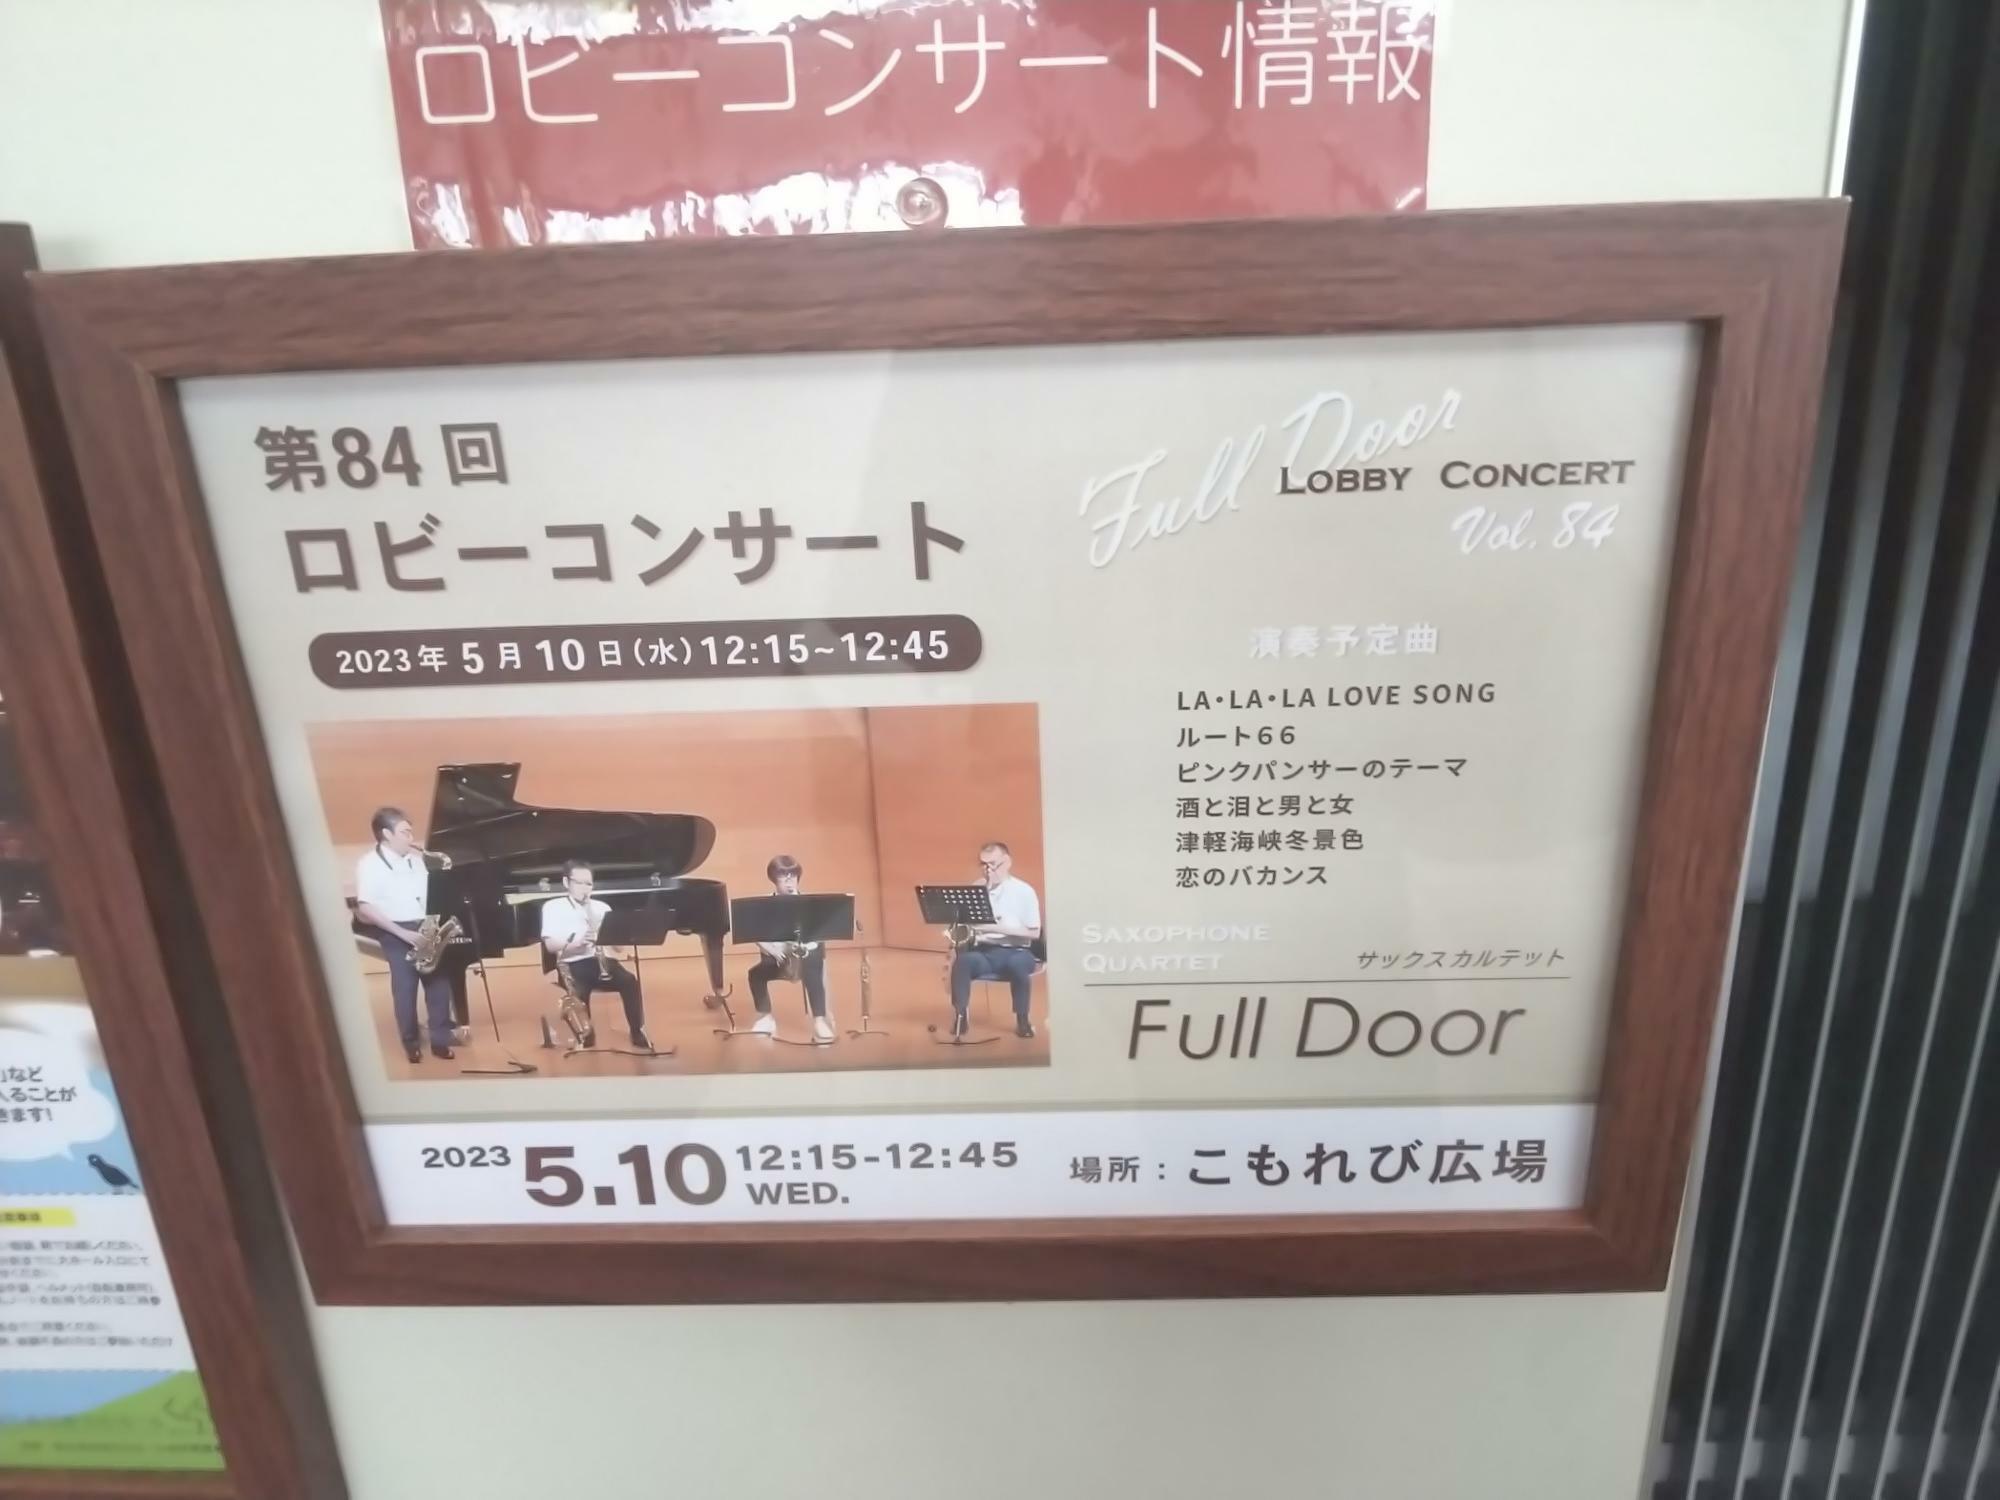 東広島芸術文化ホールくらら「第84回ロビーコンサート」の案内